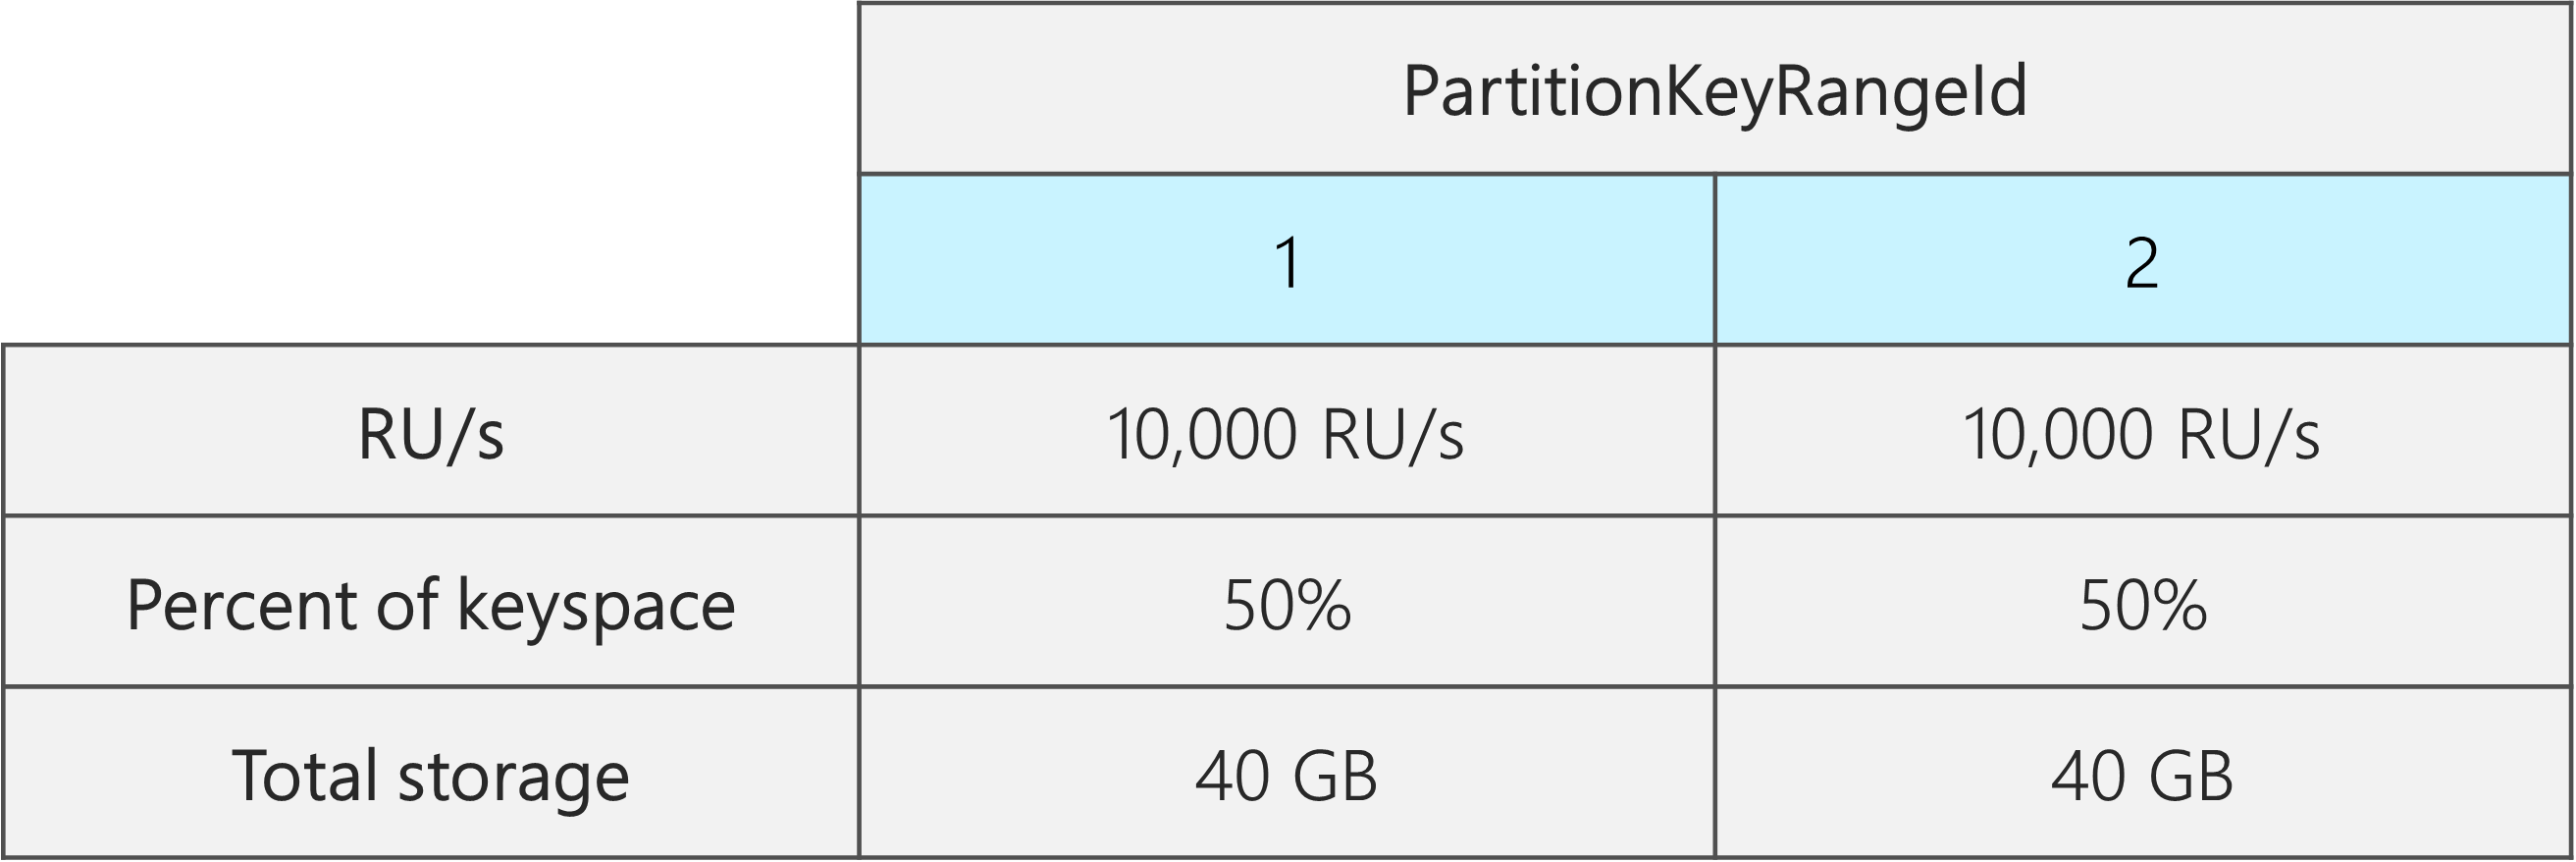 Dwa identyfikatory PartitionKeyRangeId, z których każda ma 10 000 RU/s, 40 GB i 50% całkowitej przestrzeni kluczy